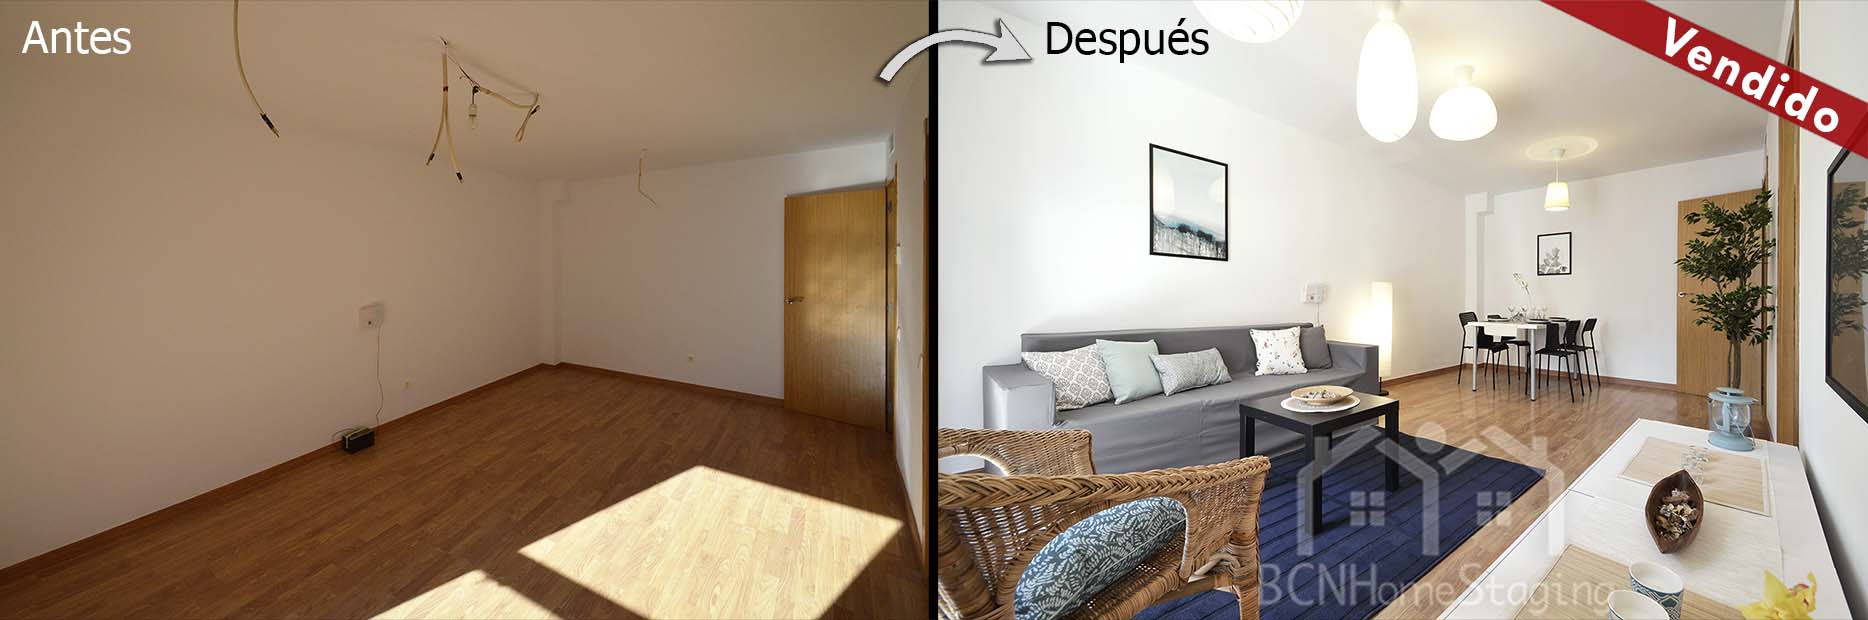 home-staging-barcelona-salon-muebles-cartón